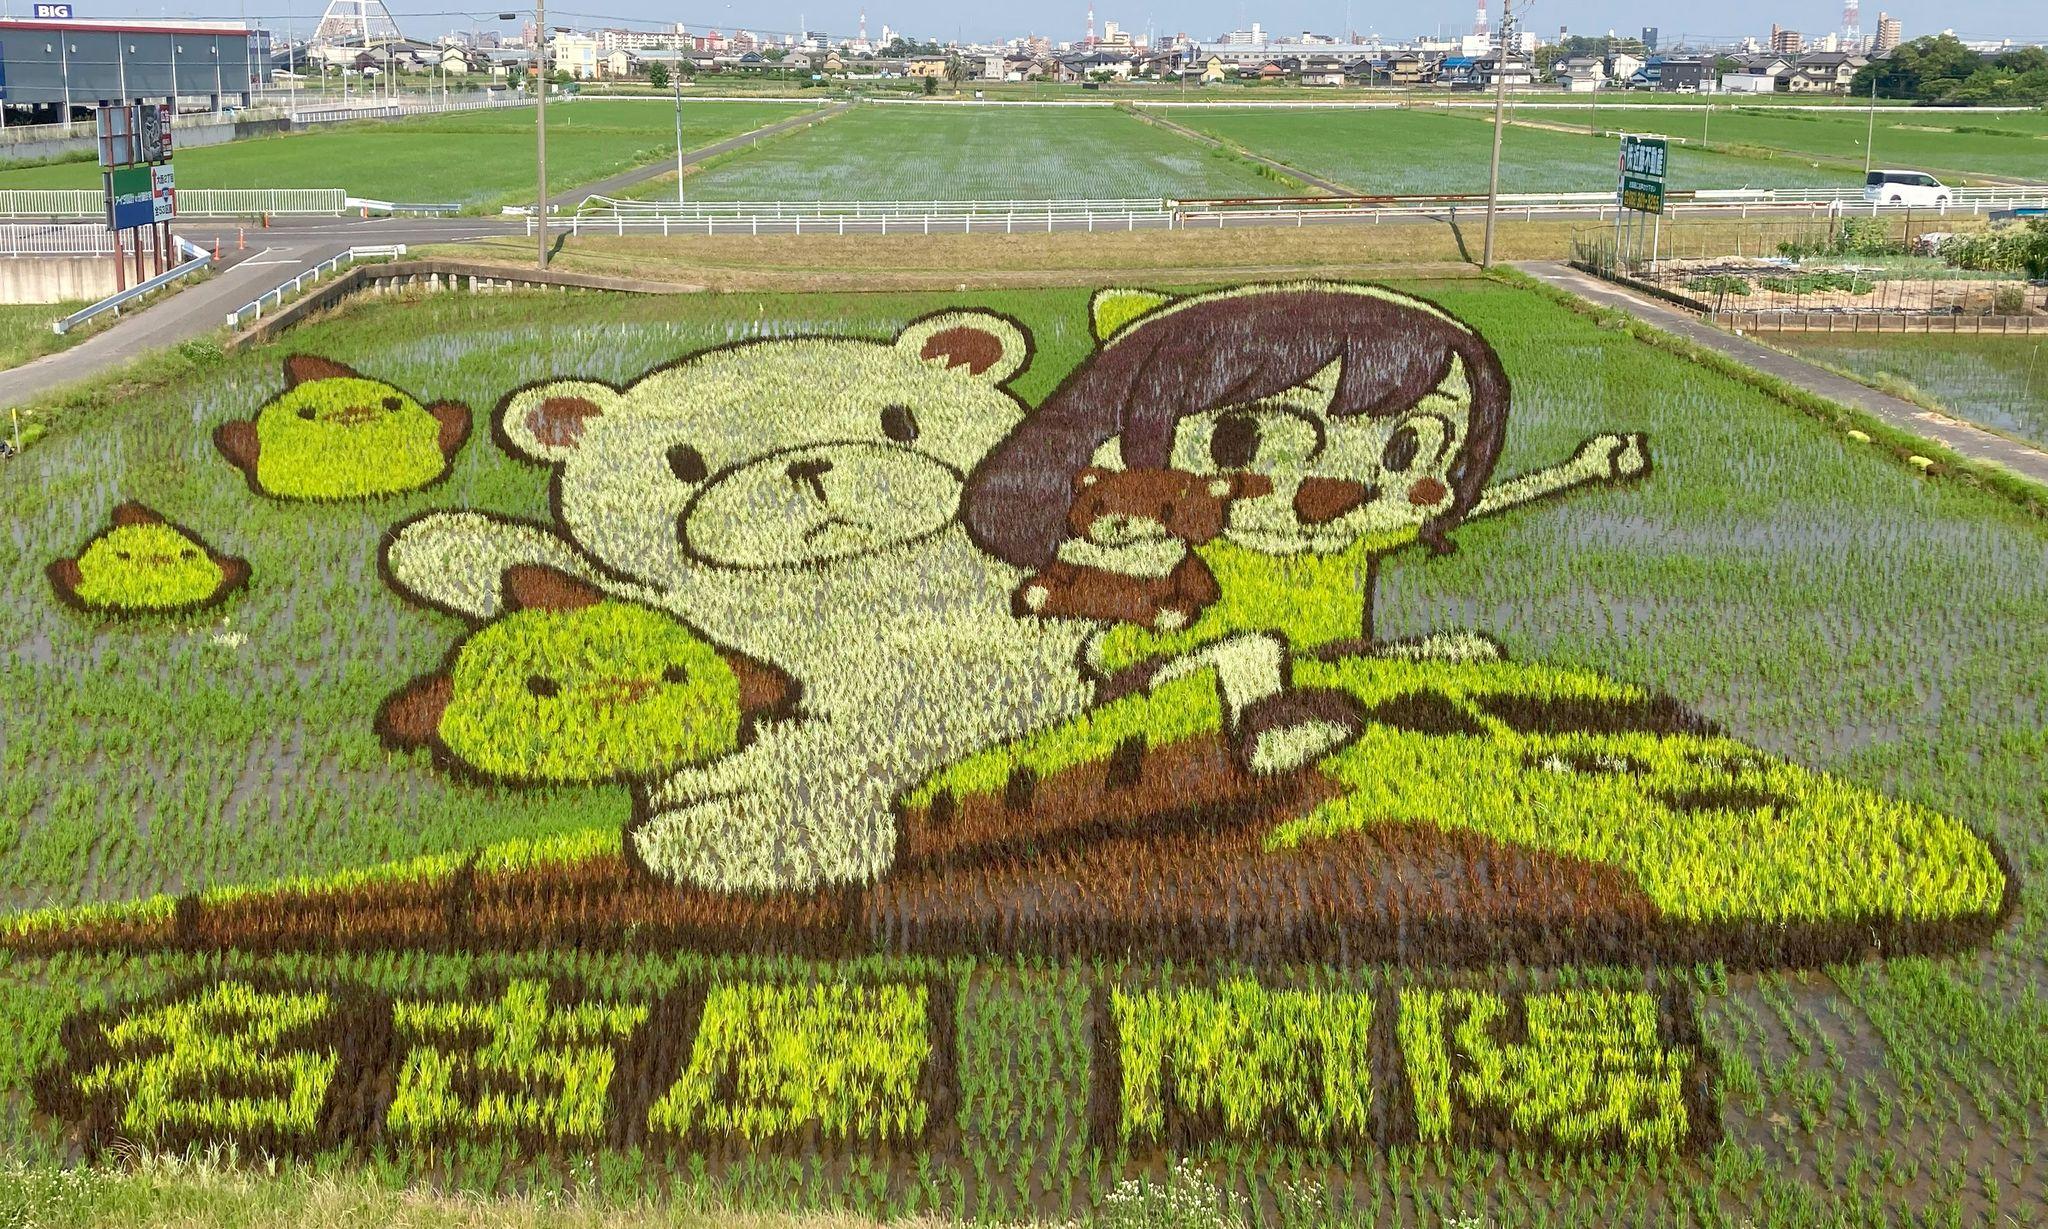 ヒマリとくま名古屋市の田んぼアートが色づく 新名物「ぴよりん」や引退を発表した「ドクターイエロー」の姿も 7月上旬が見頃